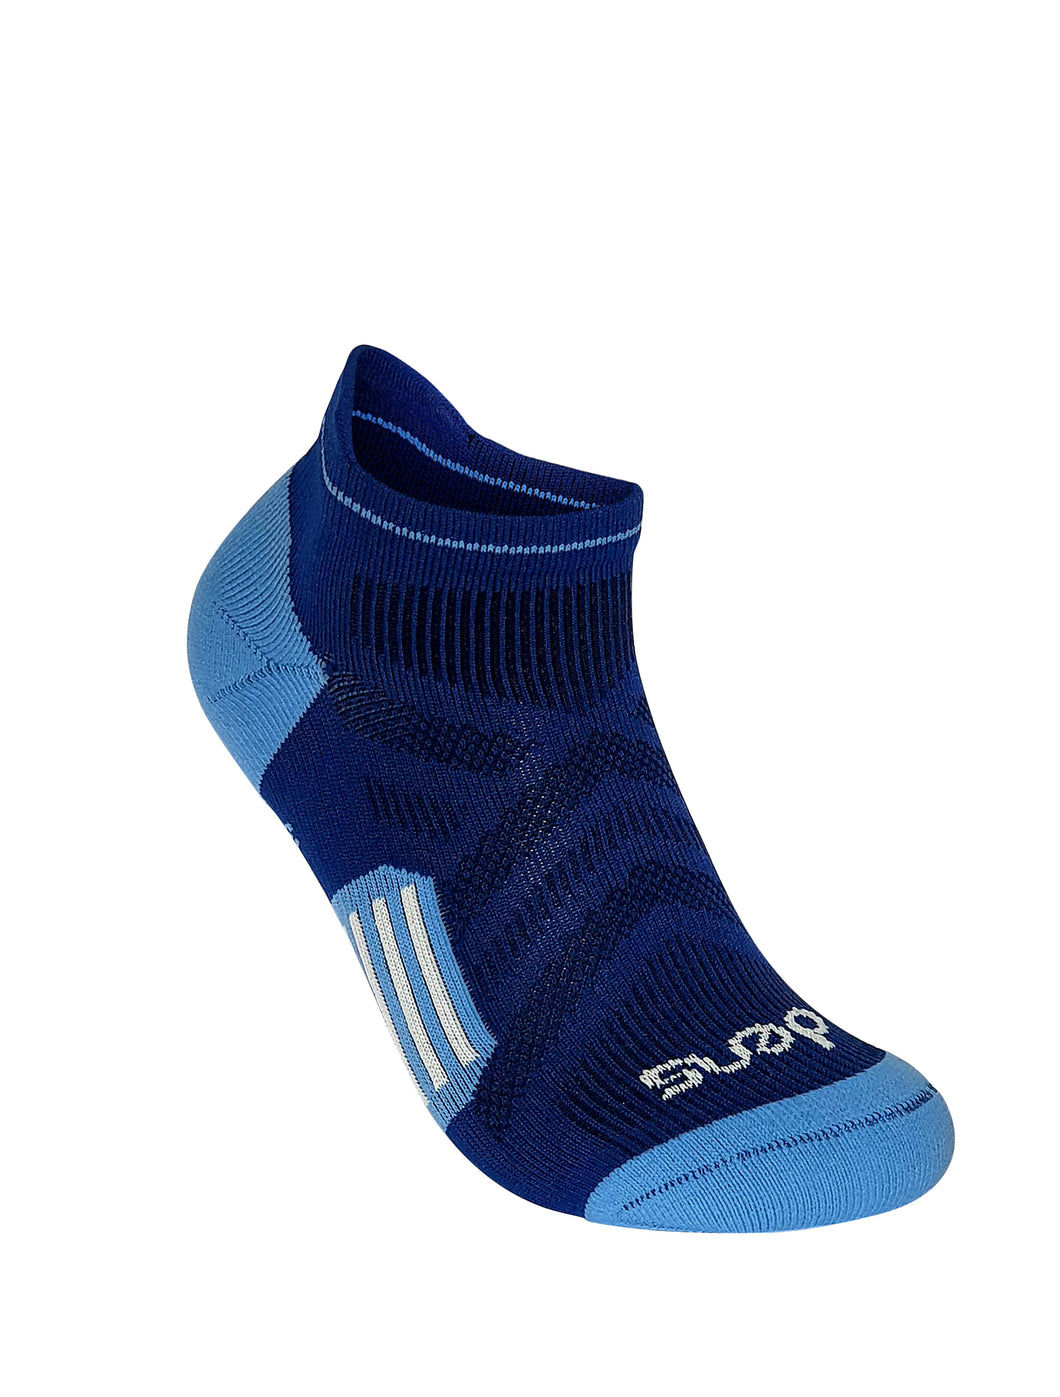 Short Light Blue and Dark Blue Ankle Socks